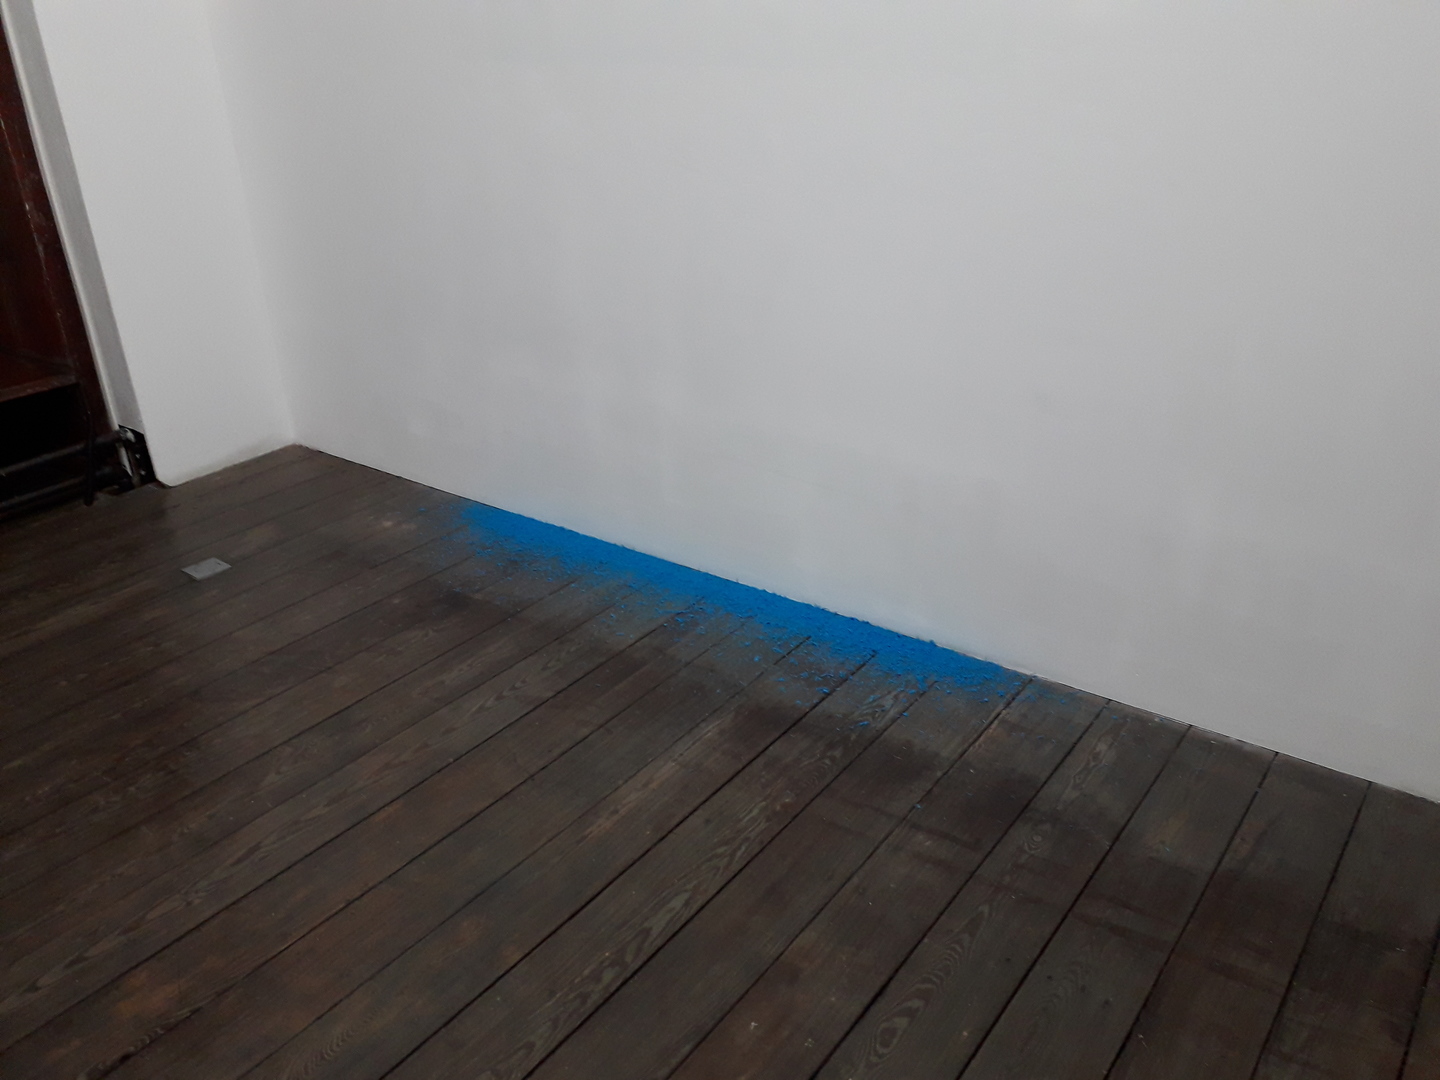 Image 1 : Poussière de craie bleue au sol au pied d'un mur